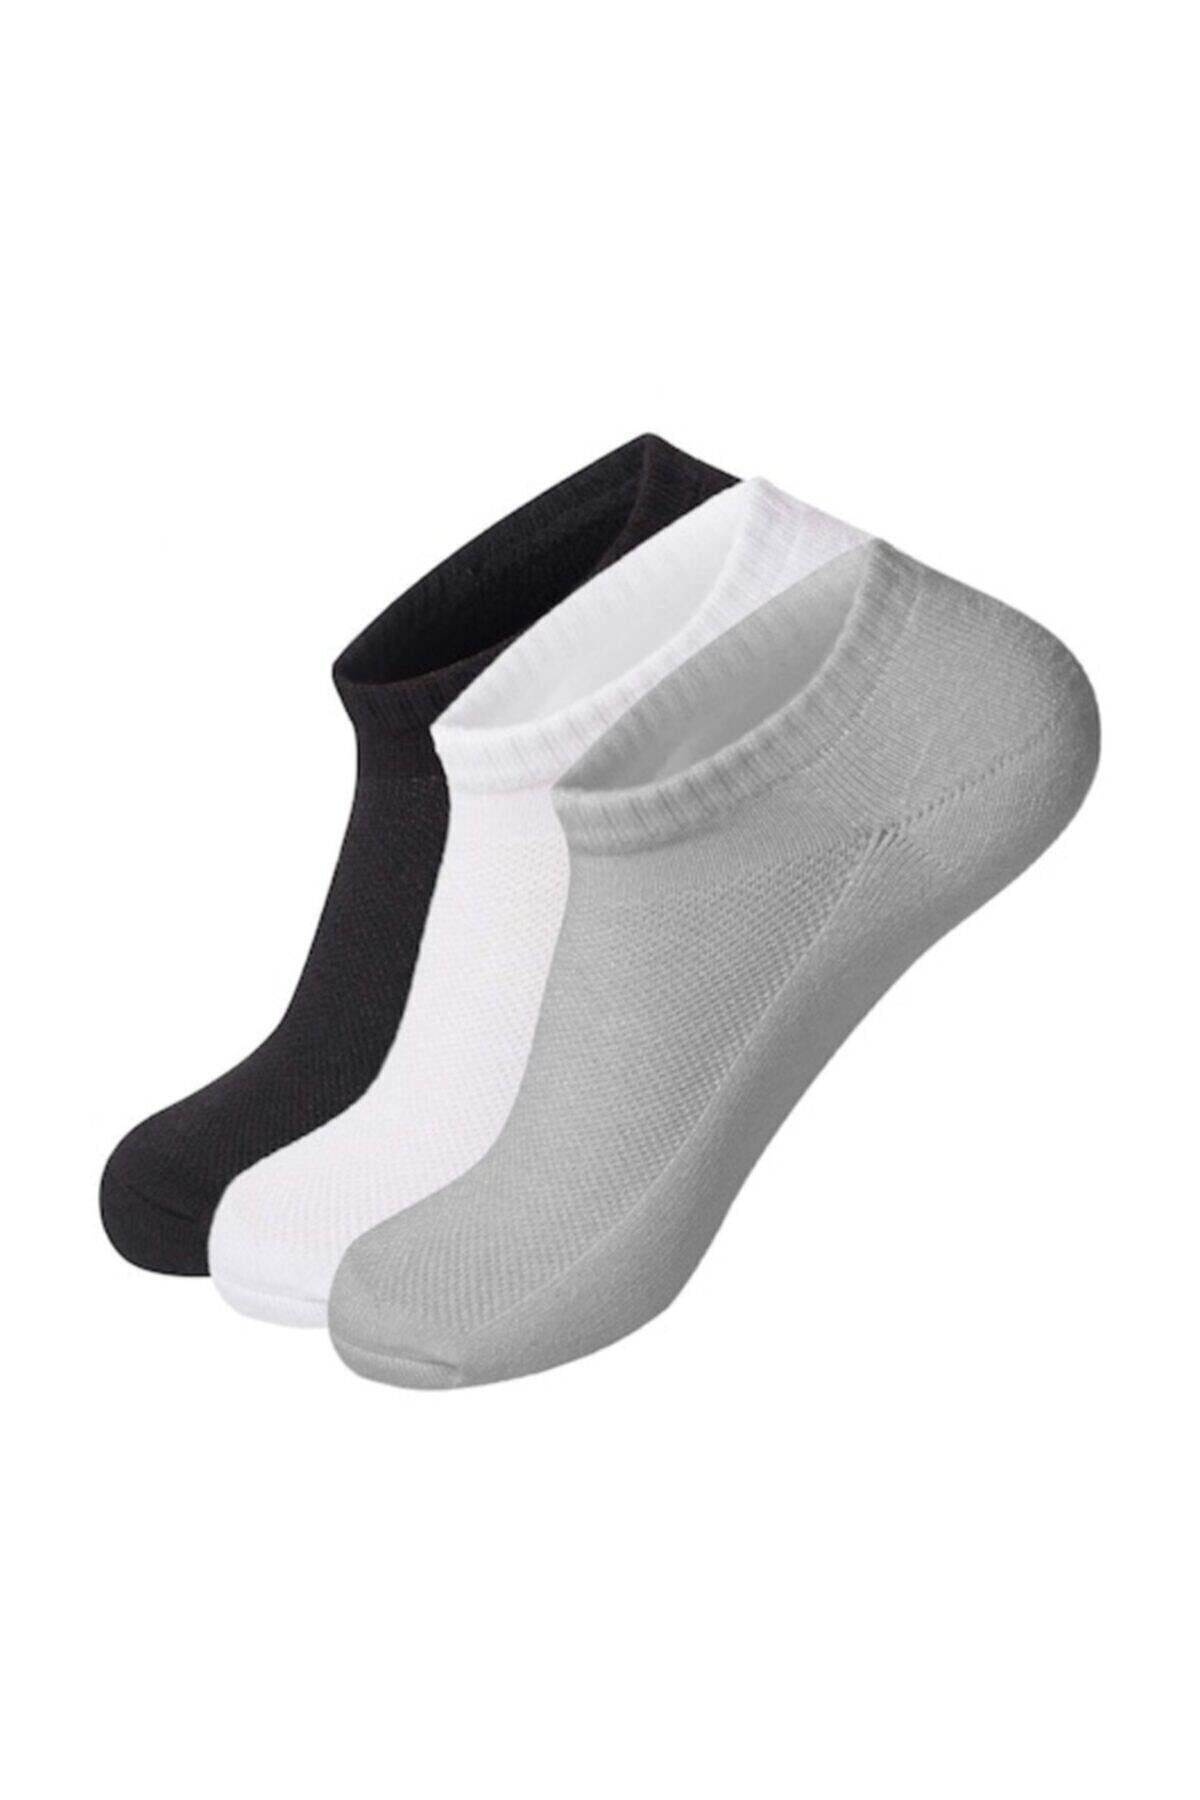 TEKSTİLCİ 12 Çift Erkek Patik Çorap - Spor Ayakkabı Kısa Soket Çorabı